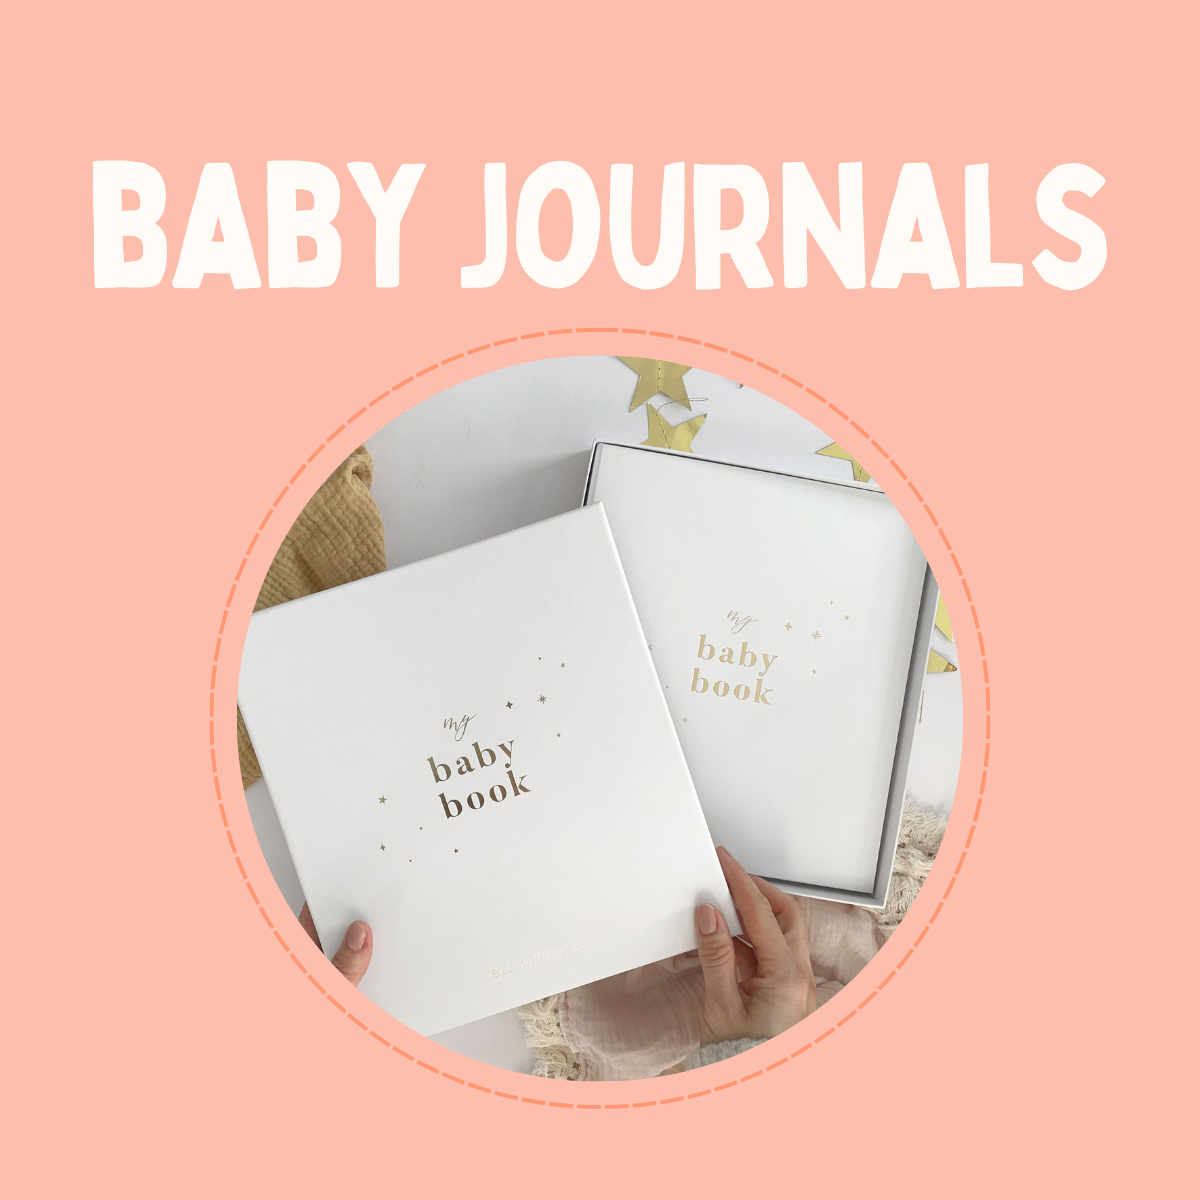 Baby Journals